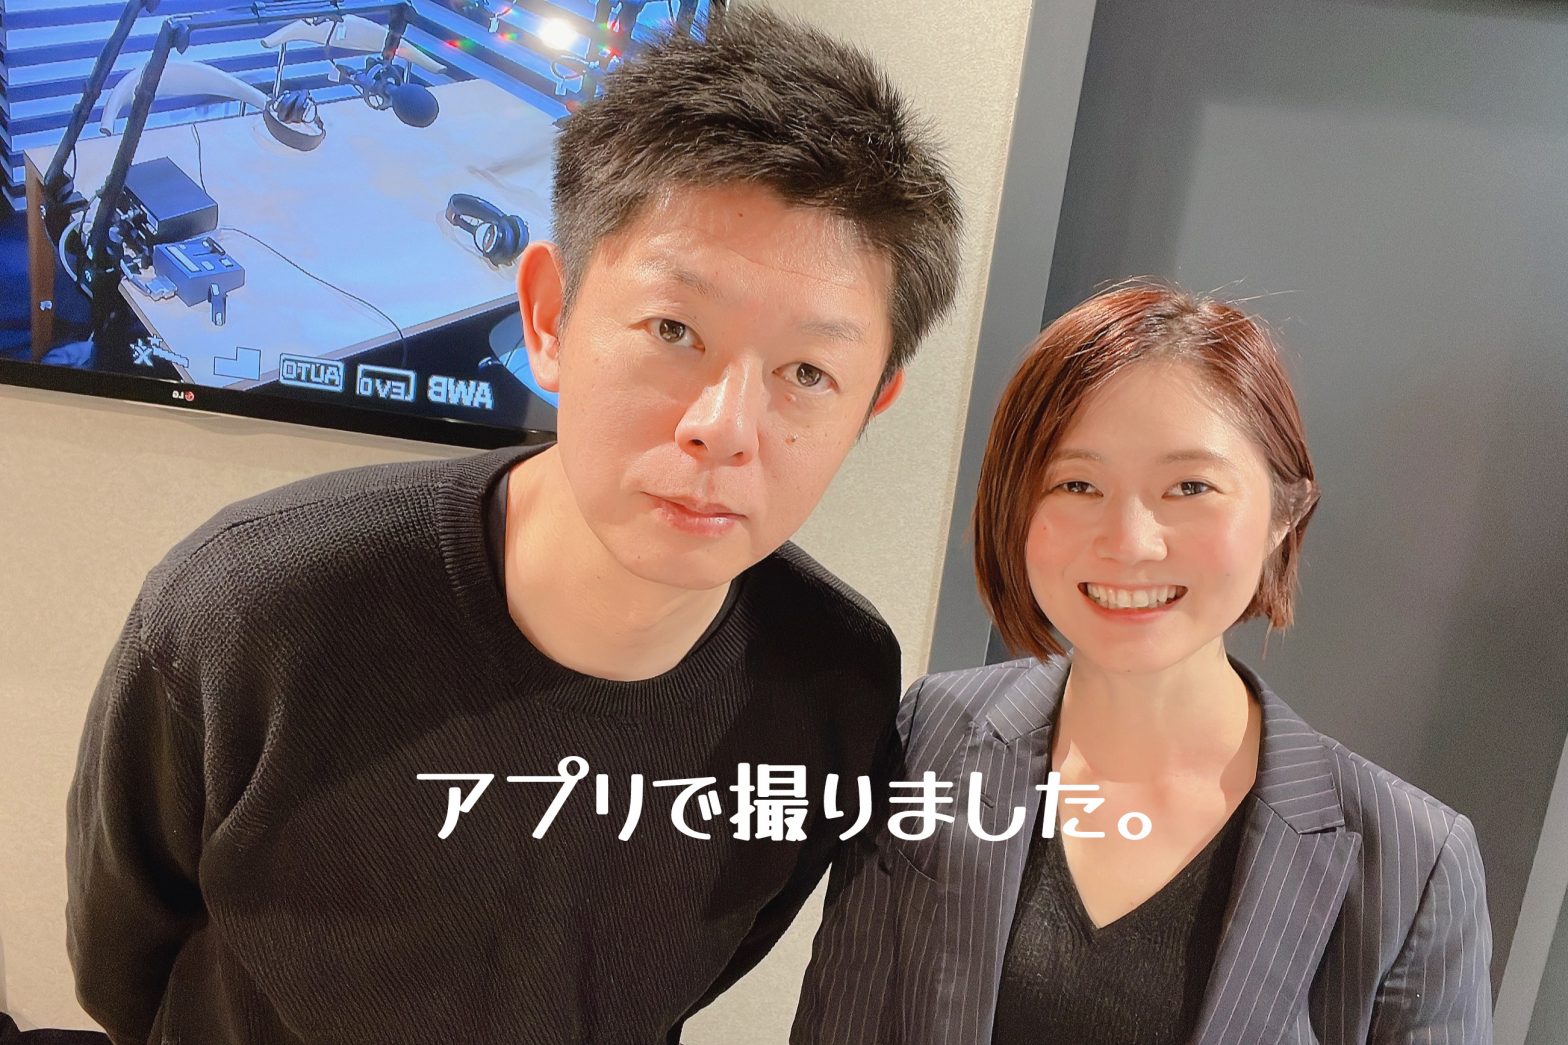 加工アプリで撮影した島田秀平さんと古藤由佳げ弁護士